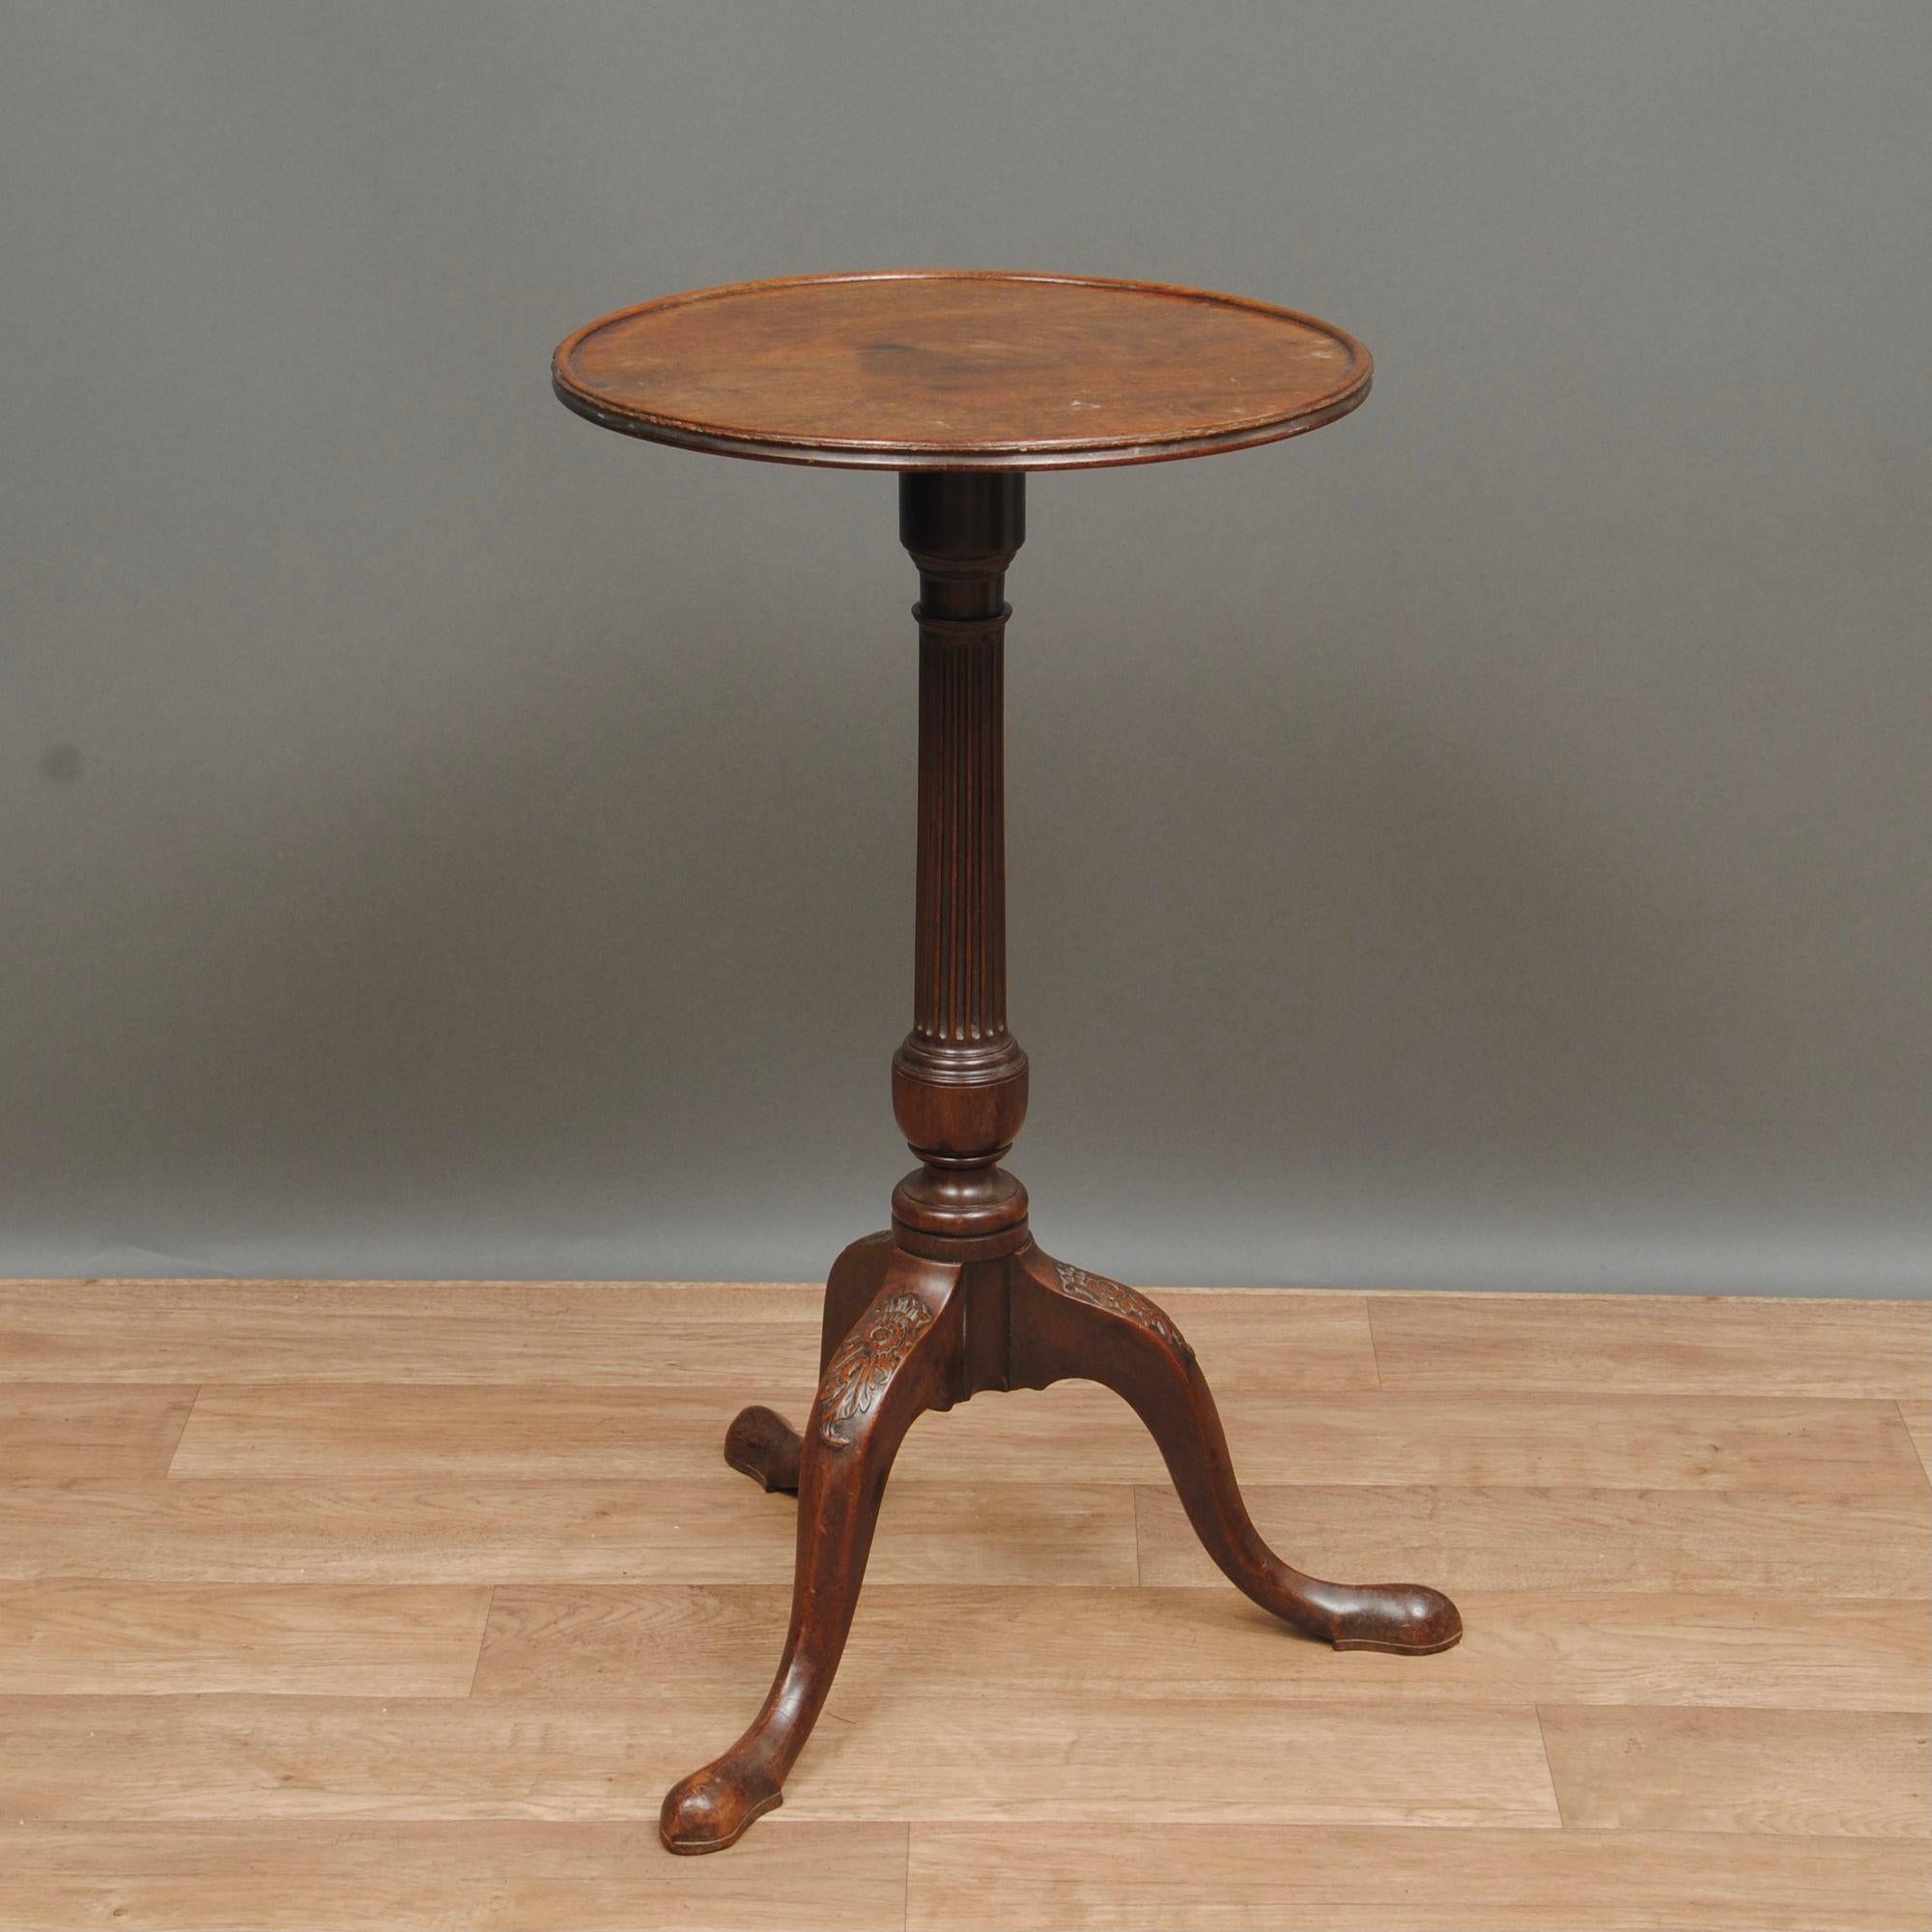 Élégante table tripode ou table à vin en acajou du XVIIIe siècle, avec colonne cannelée et pieds cabriole sculptés, bonne couleur et patine.